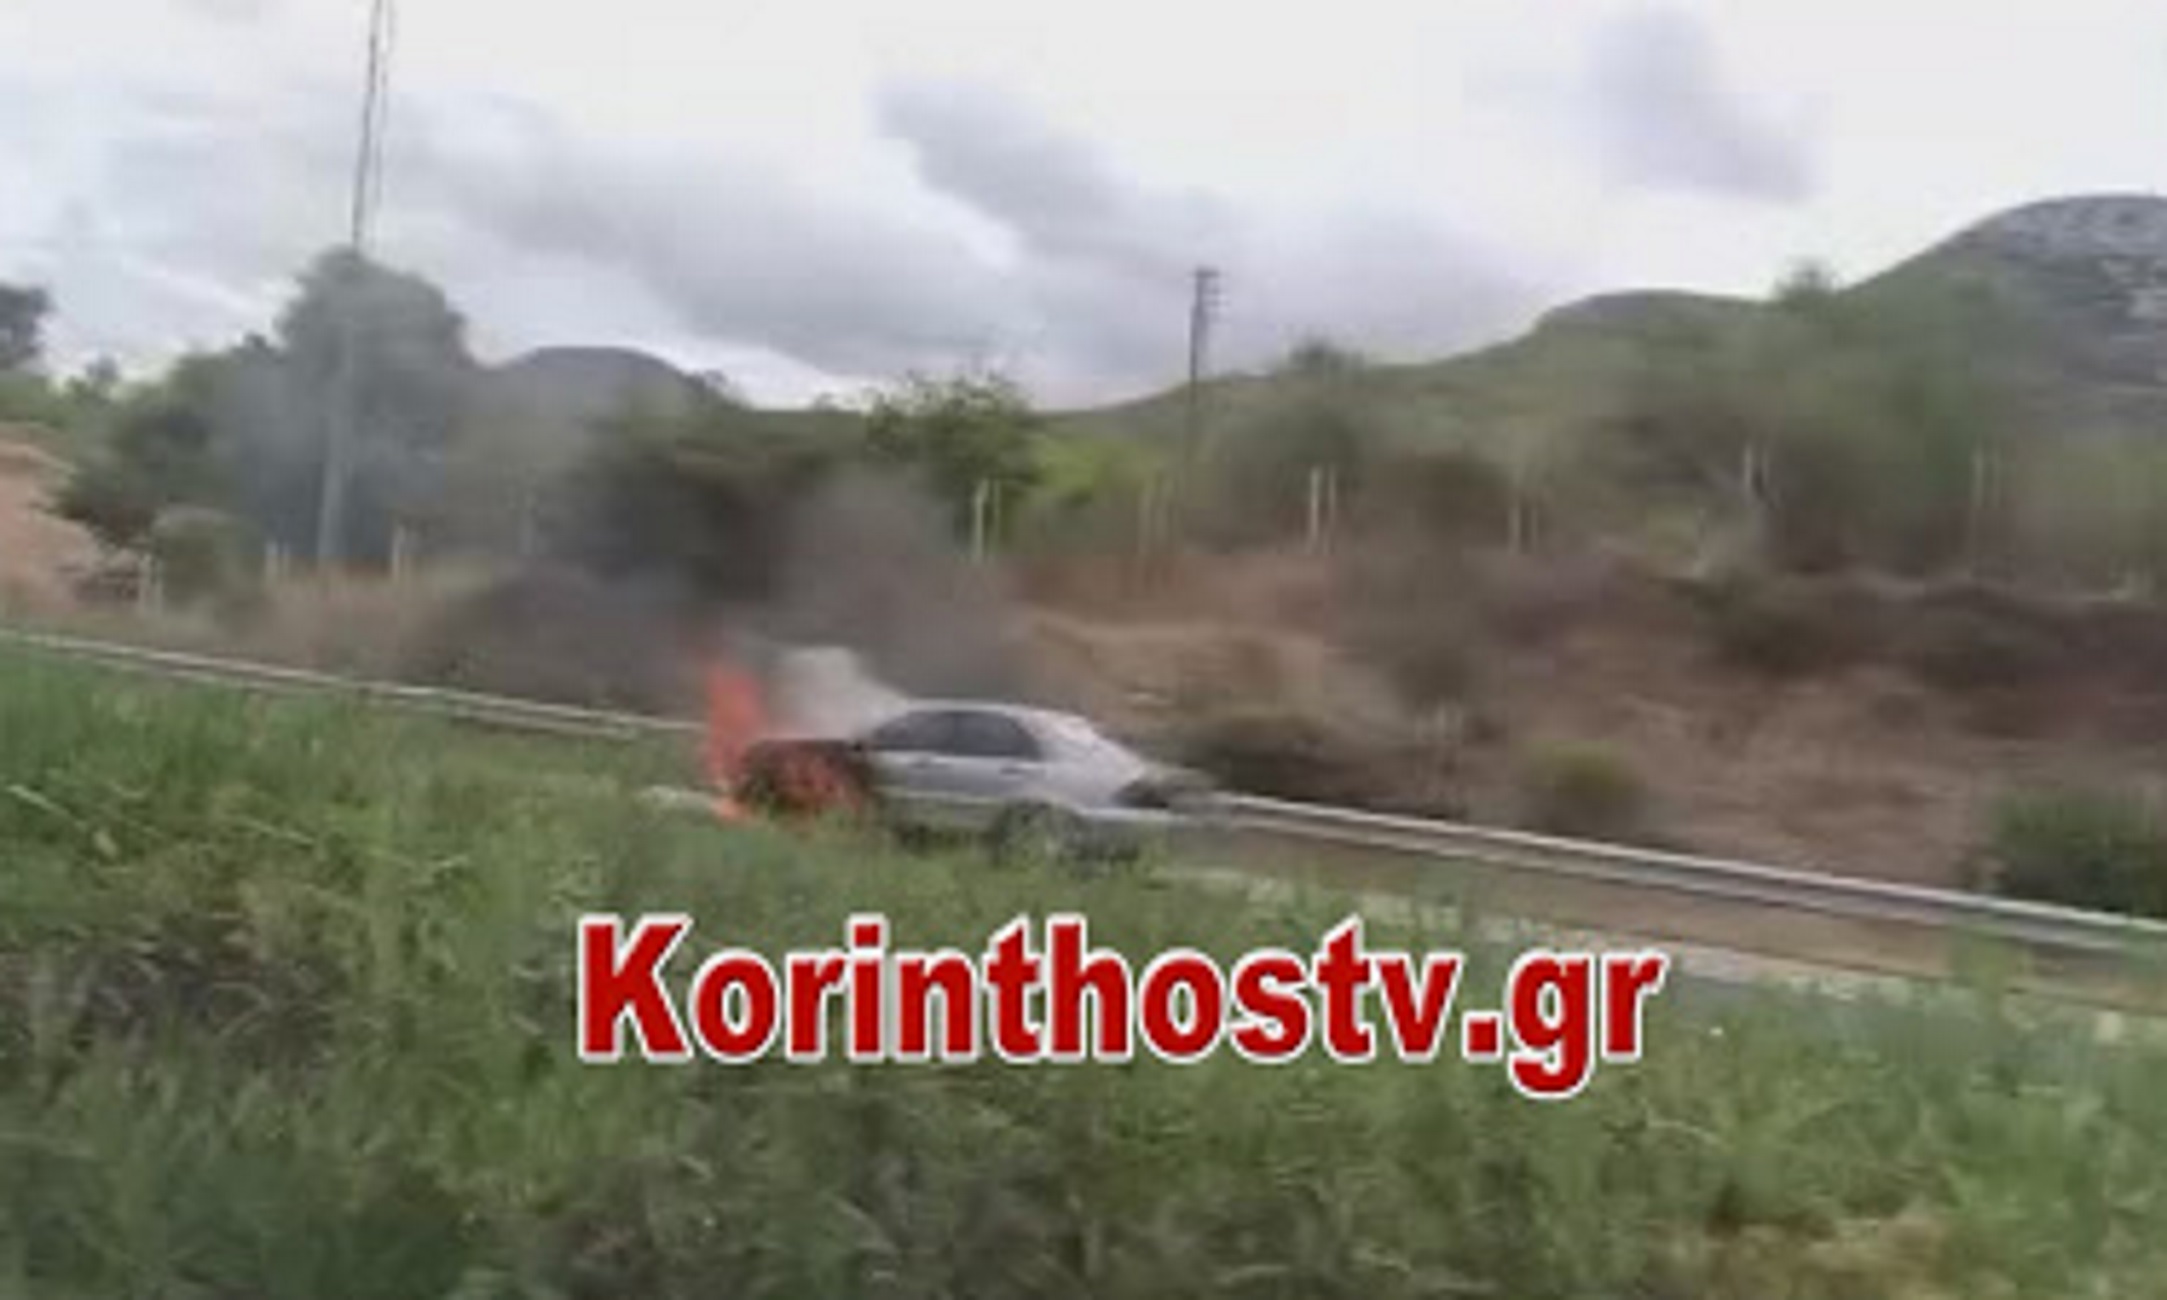 Εθνική Οδός: Η στιγμή που αυτοκίνητο πιάνει φωτιά εν κινήσει κοντά στα διόδια Σπαθοβουνίου (Βίντεο)